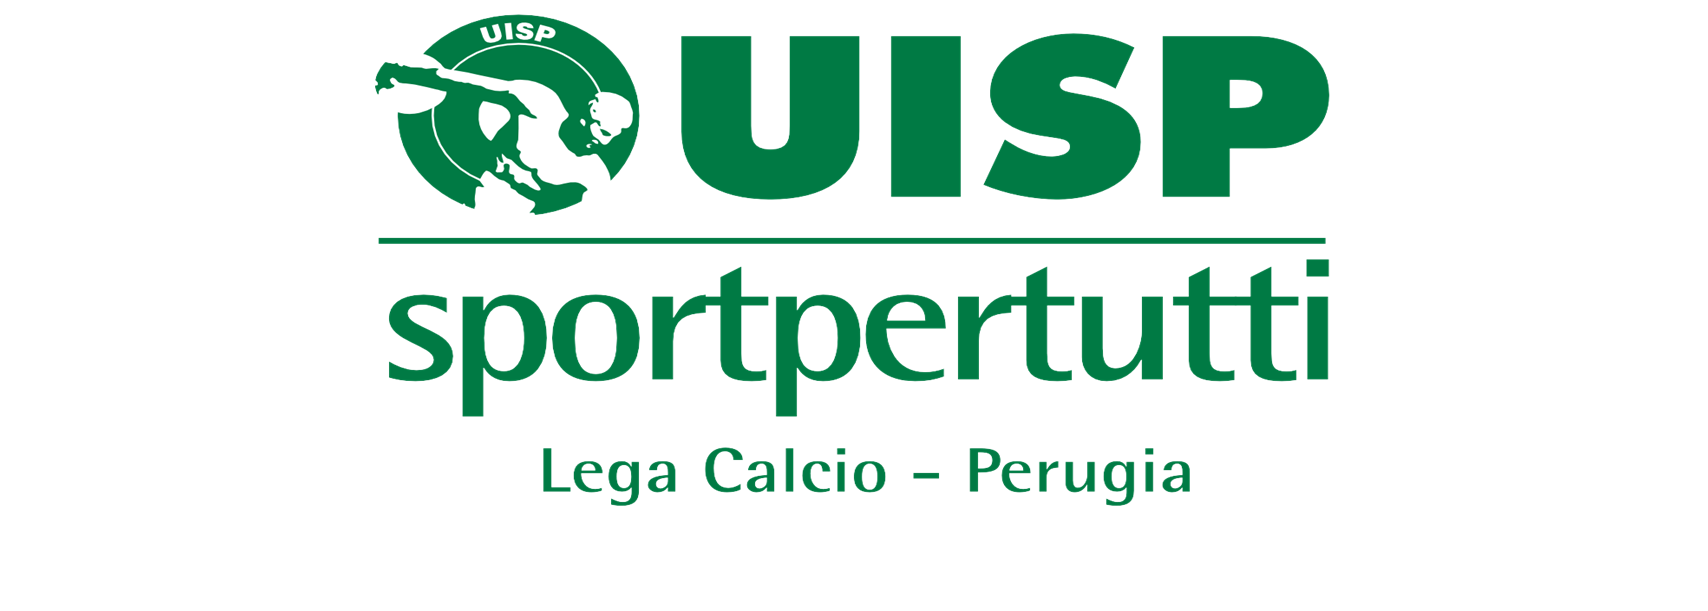 COMUNICATO UFFICIALE N.16 DEL GIORNO 10/12/2015 i comunicati ufficiali della Lega Calcio Perugia sono presenti sul sito internet: www.uisp.